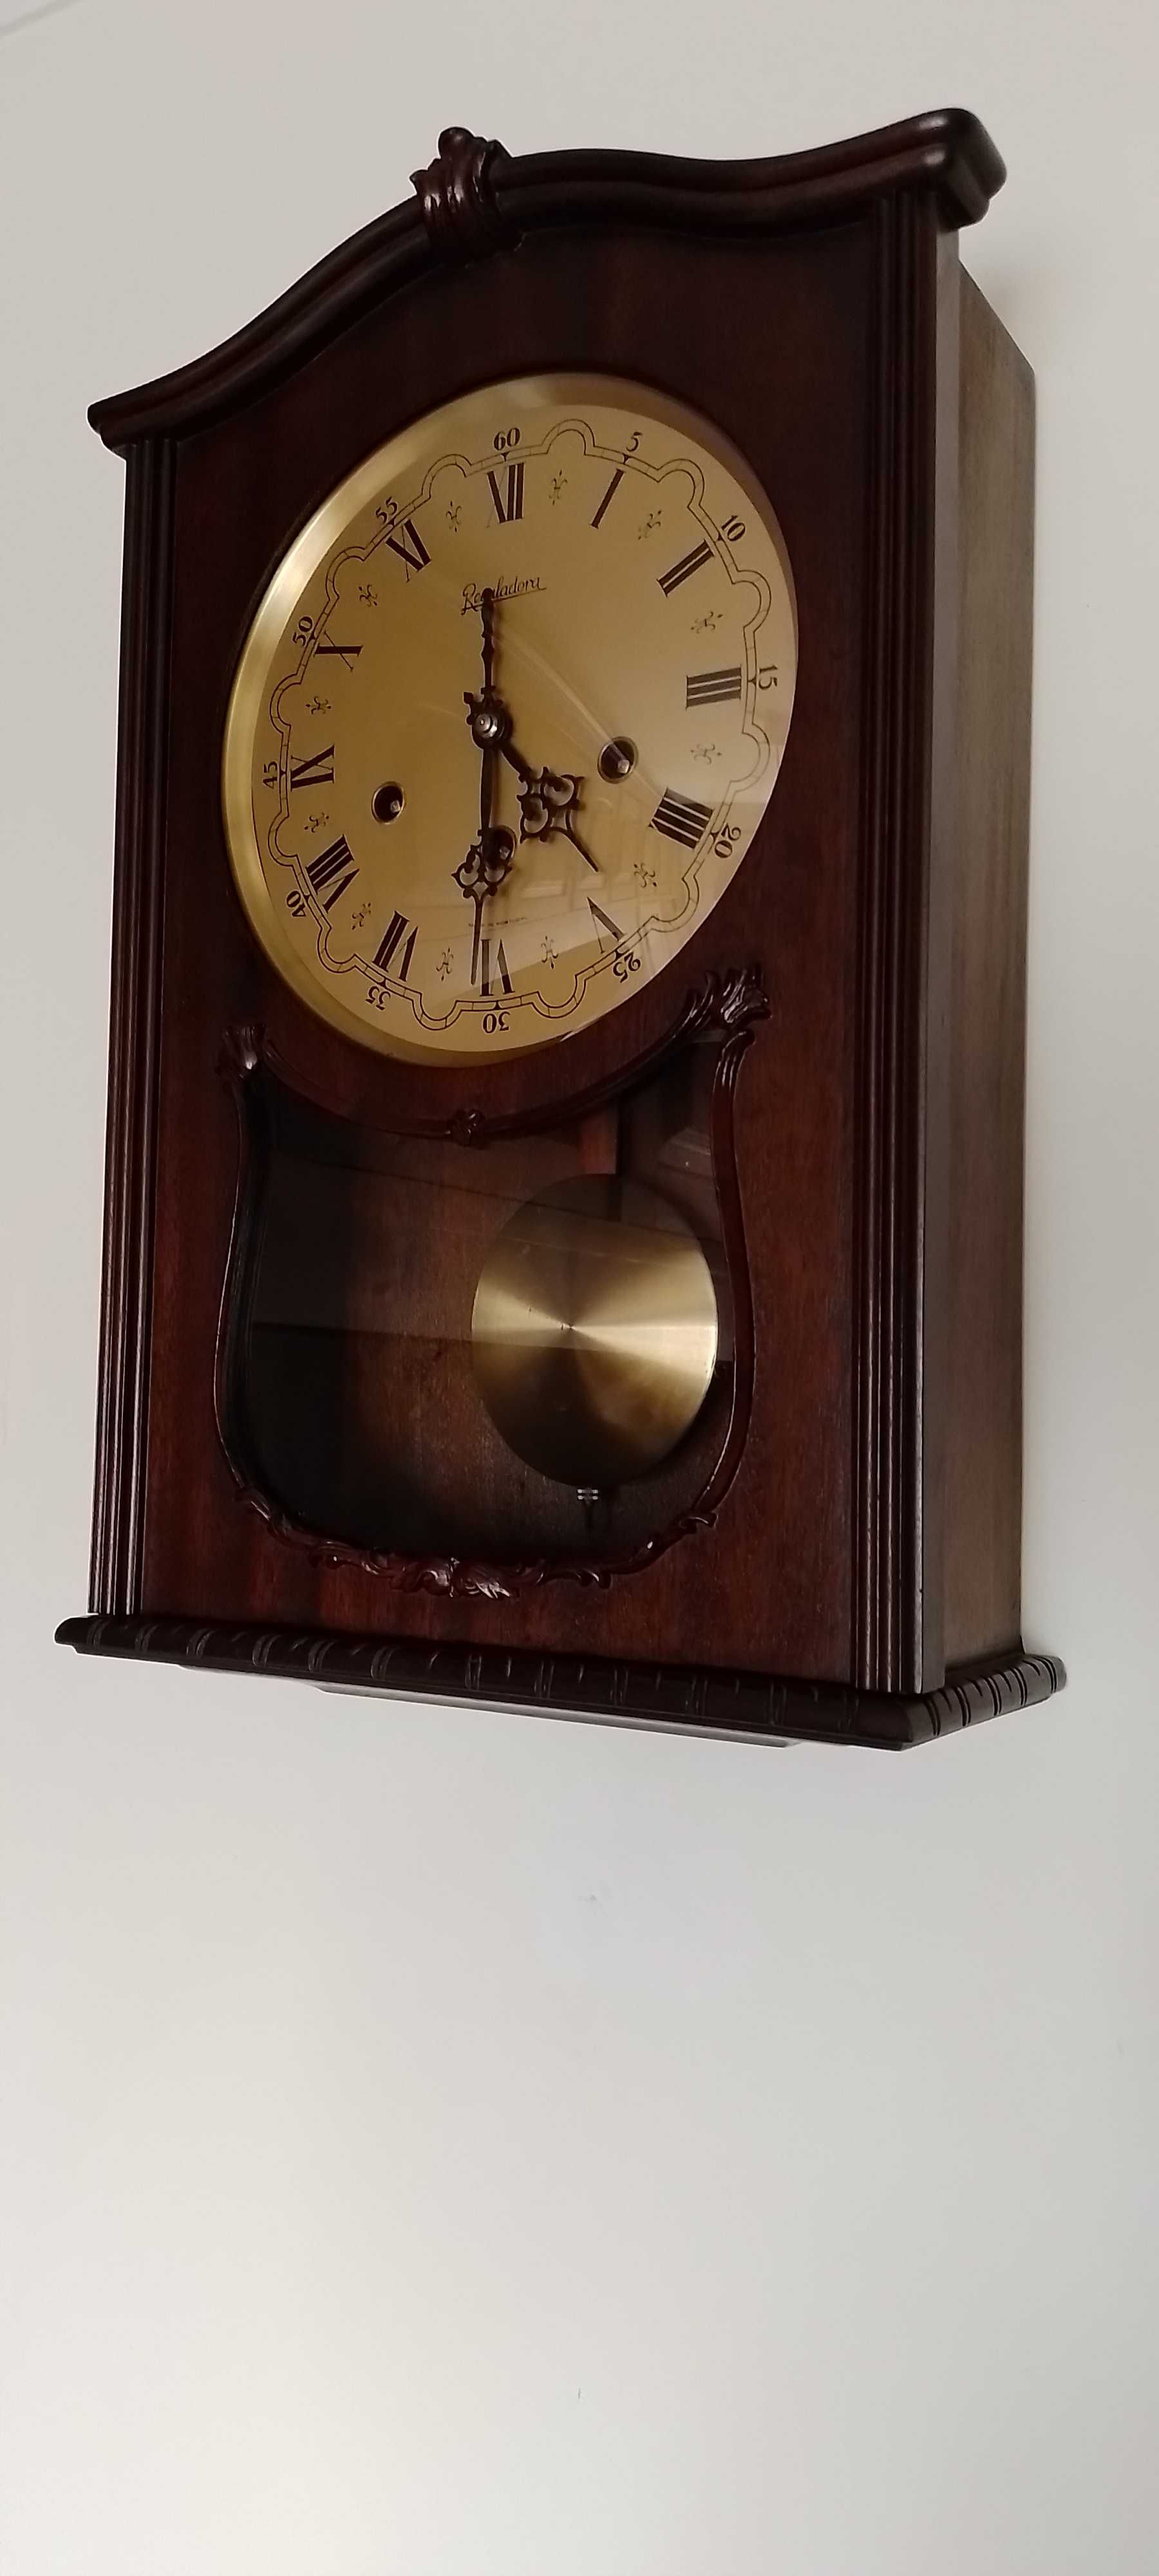 Relógio antigo de parede da fábrica REGULADORA